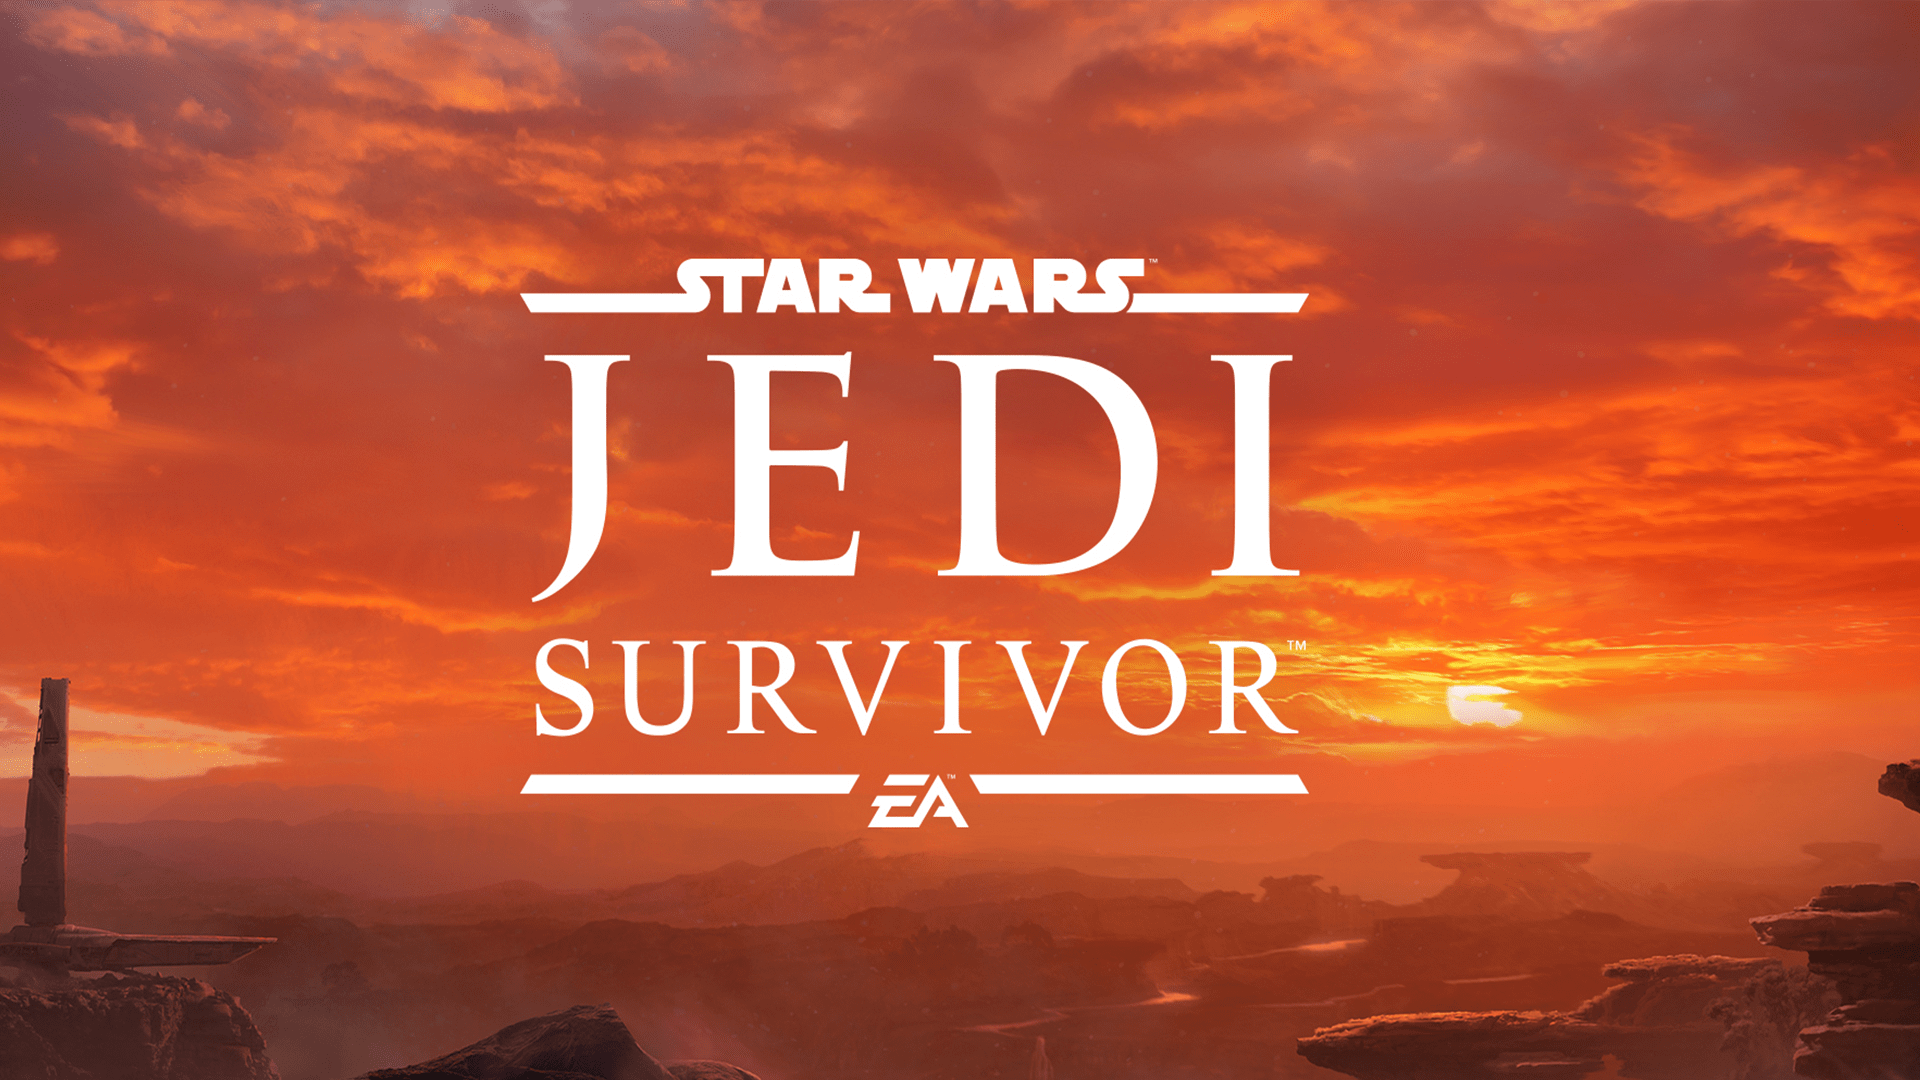 Star Wars Jedi: Survivor PC Requirements Revealed